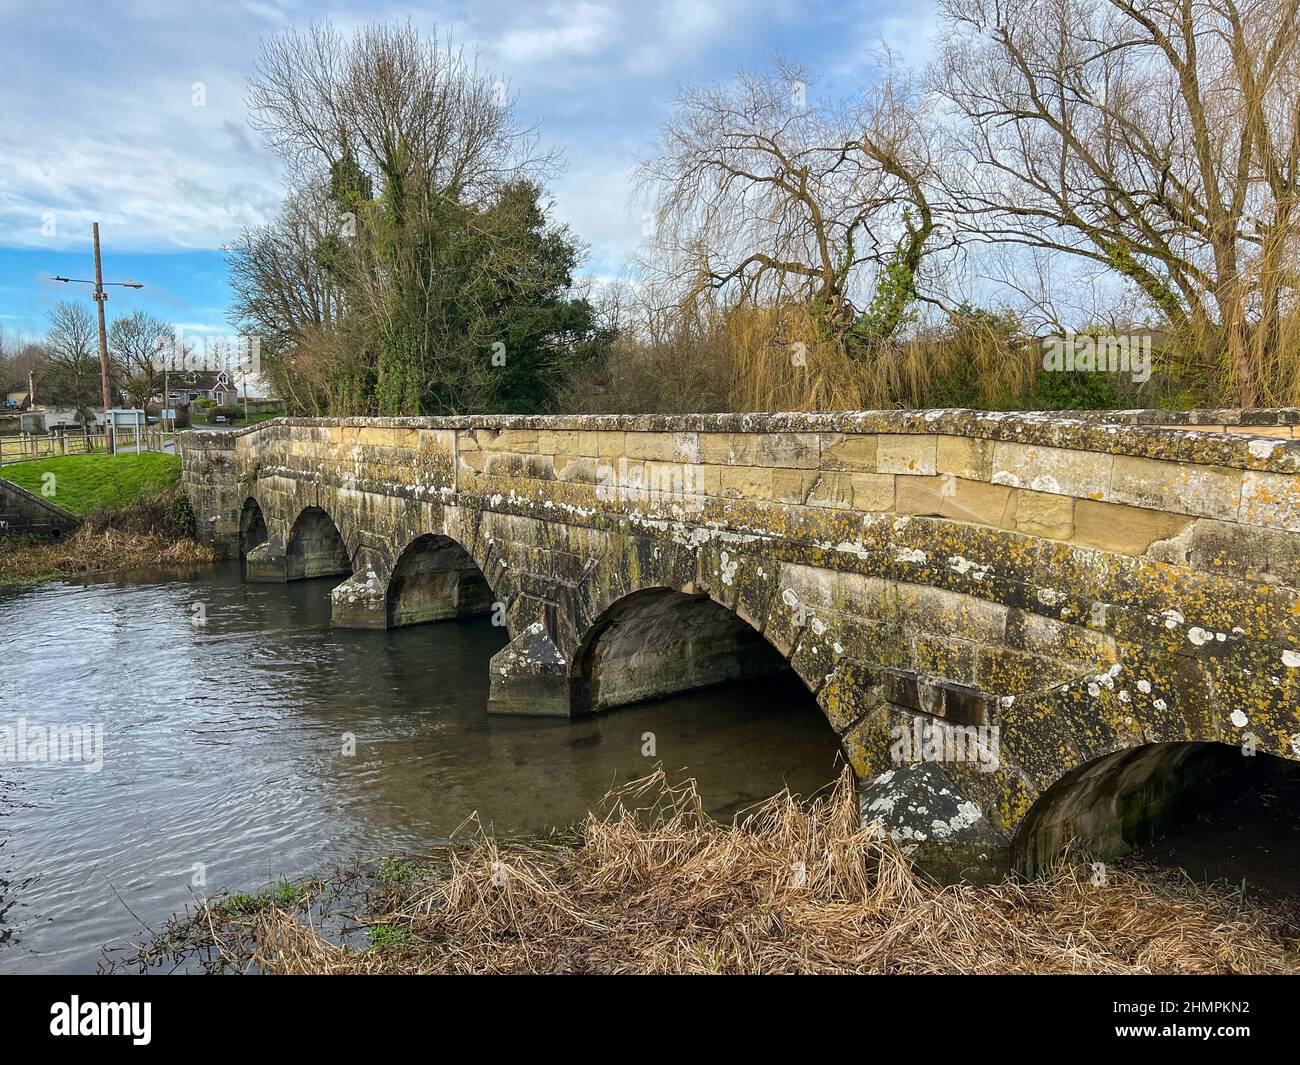 El puente Queensberry que cruza el río Avon en Amesbury fue construido en 1775, Wiltshire, Reino Unido. Foto de stock